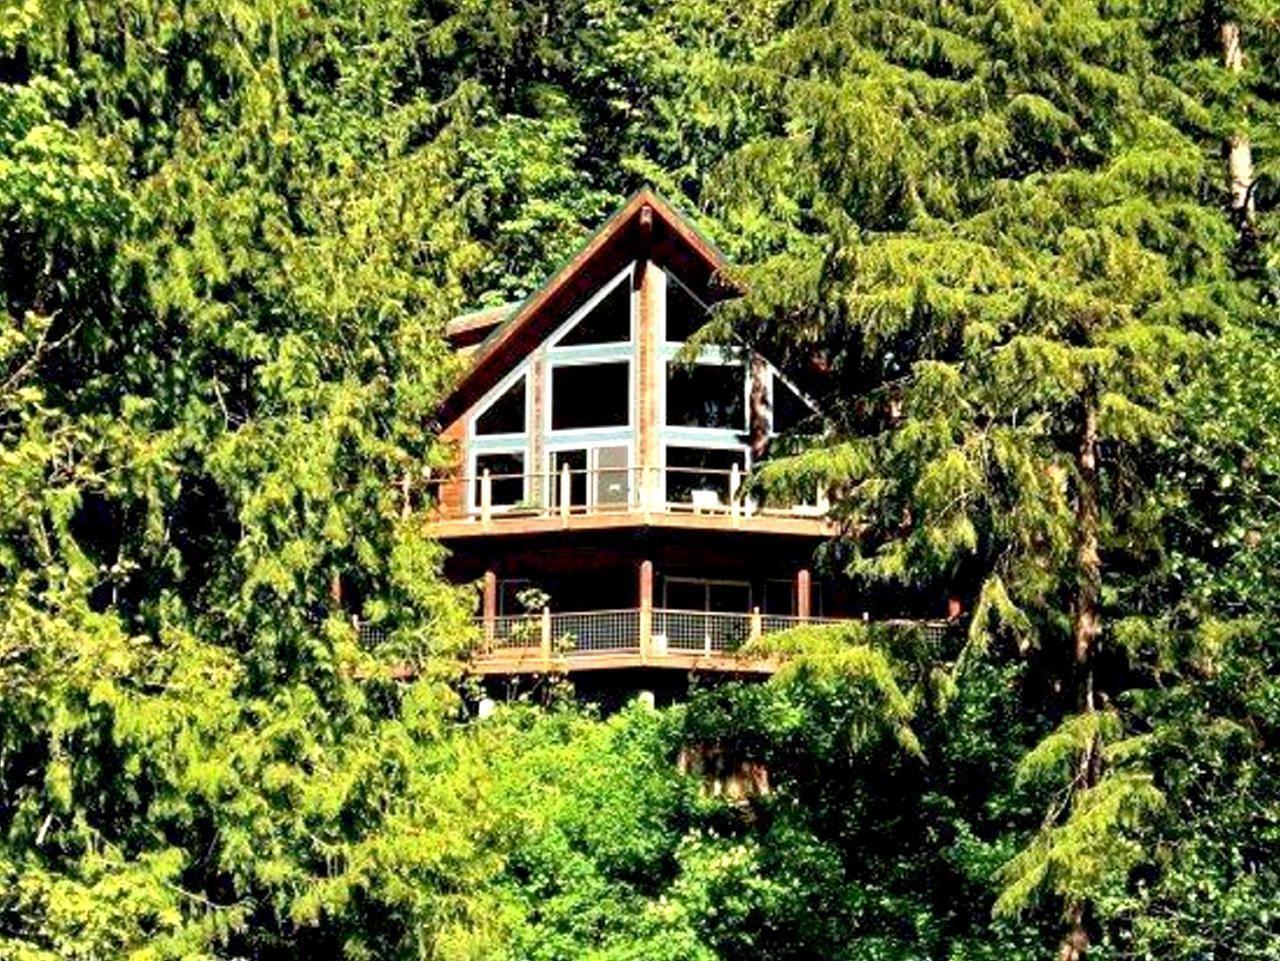 Ferienhaus in Maple Falls mit Grill und Terrasse  in den USA